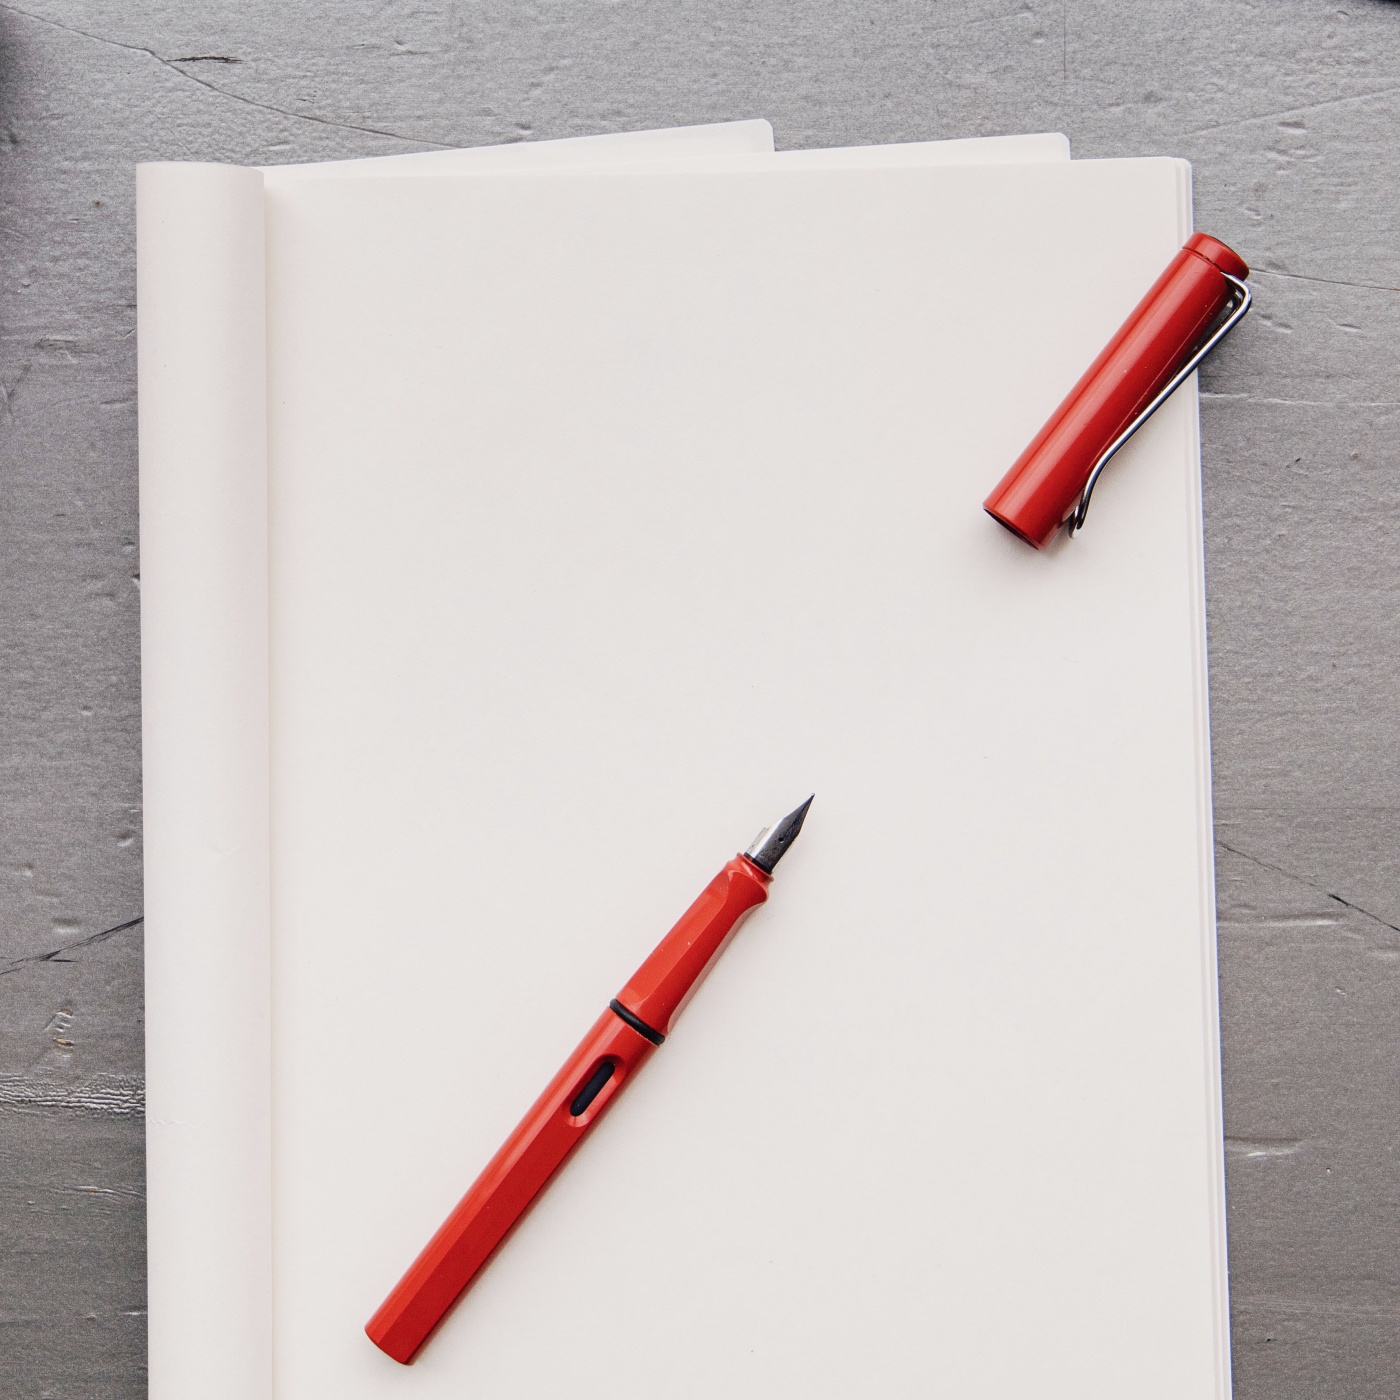 Safari Füllfederhalter Shiny Red in der Gruppe Stifte / Fine Writing / Füllfederhalter bei Pen Store (101909_r)